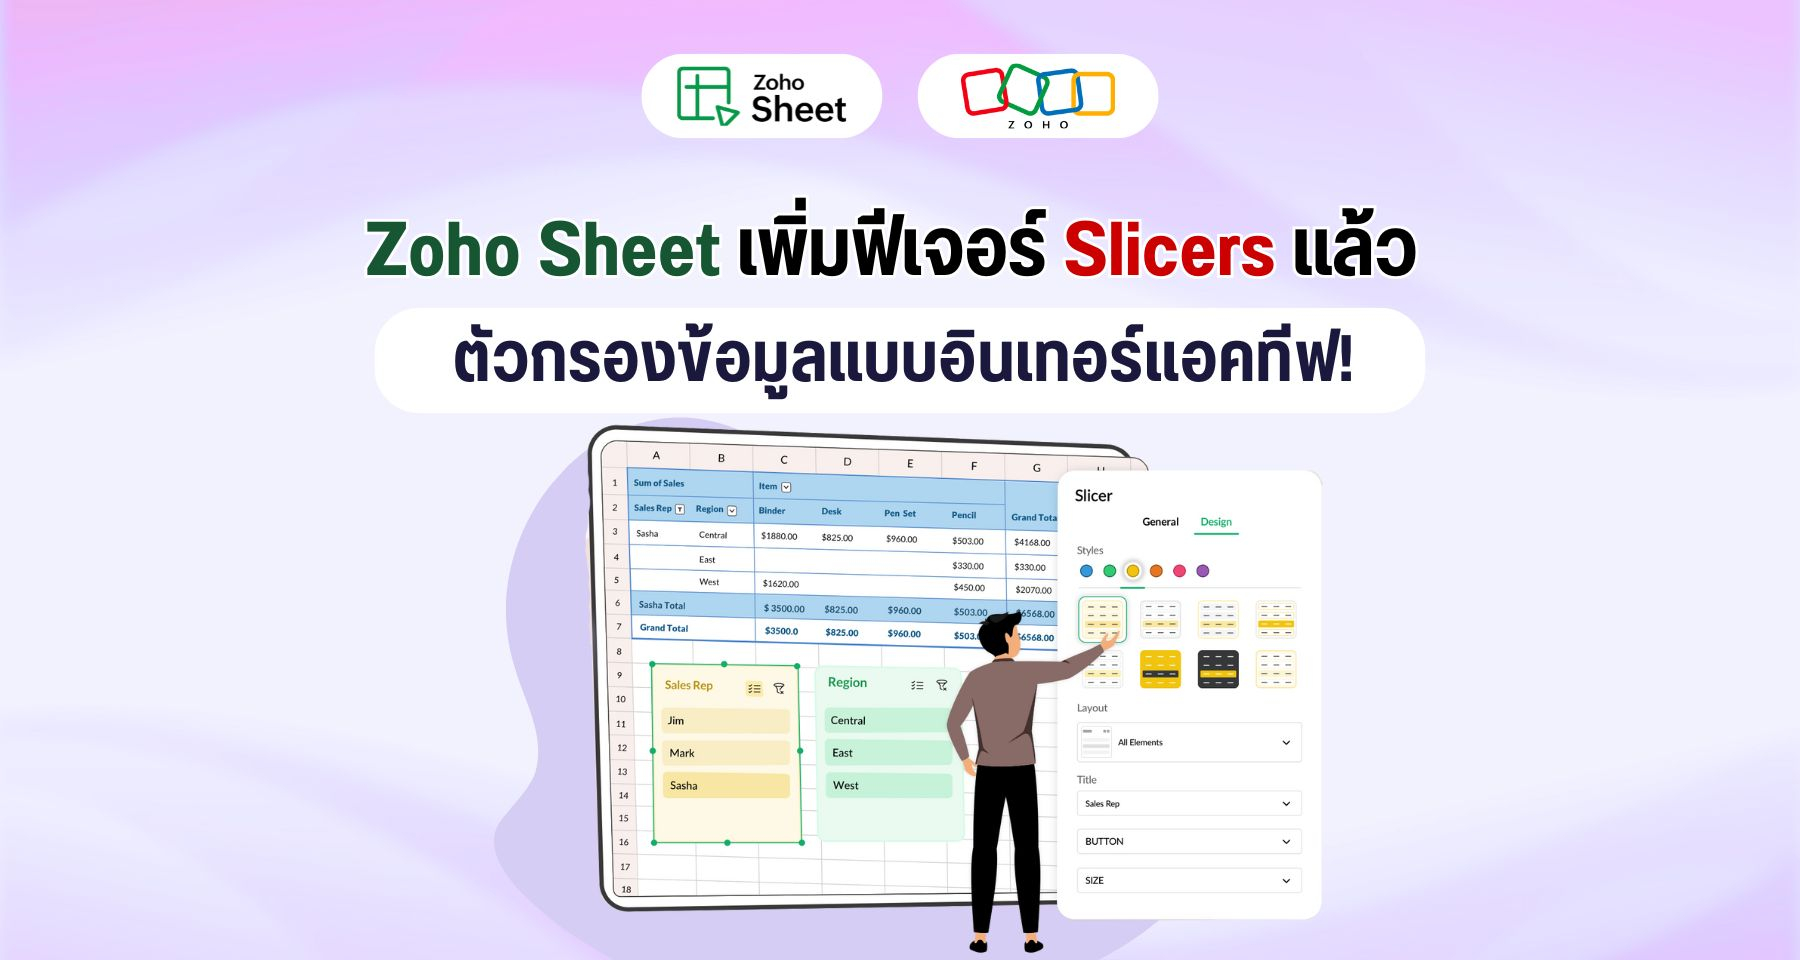 Zoho Sheet เพิ่มฟีเจอร์ Slicers ตัวกรองข้อมูลแบบอินเทอร์แอคทีฟ!